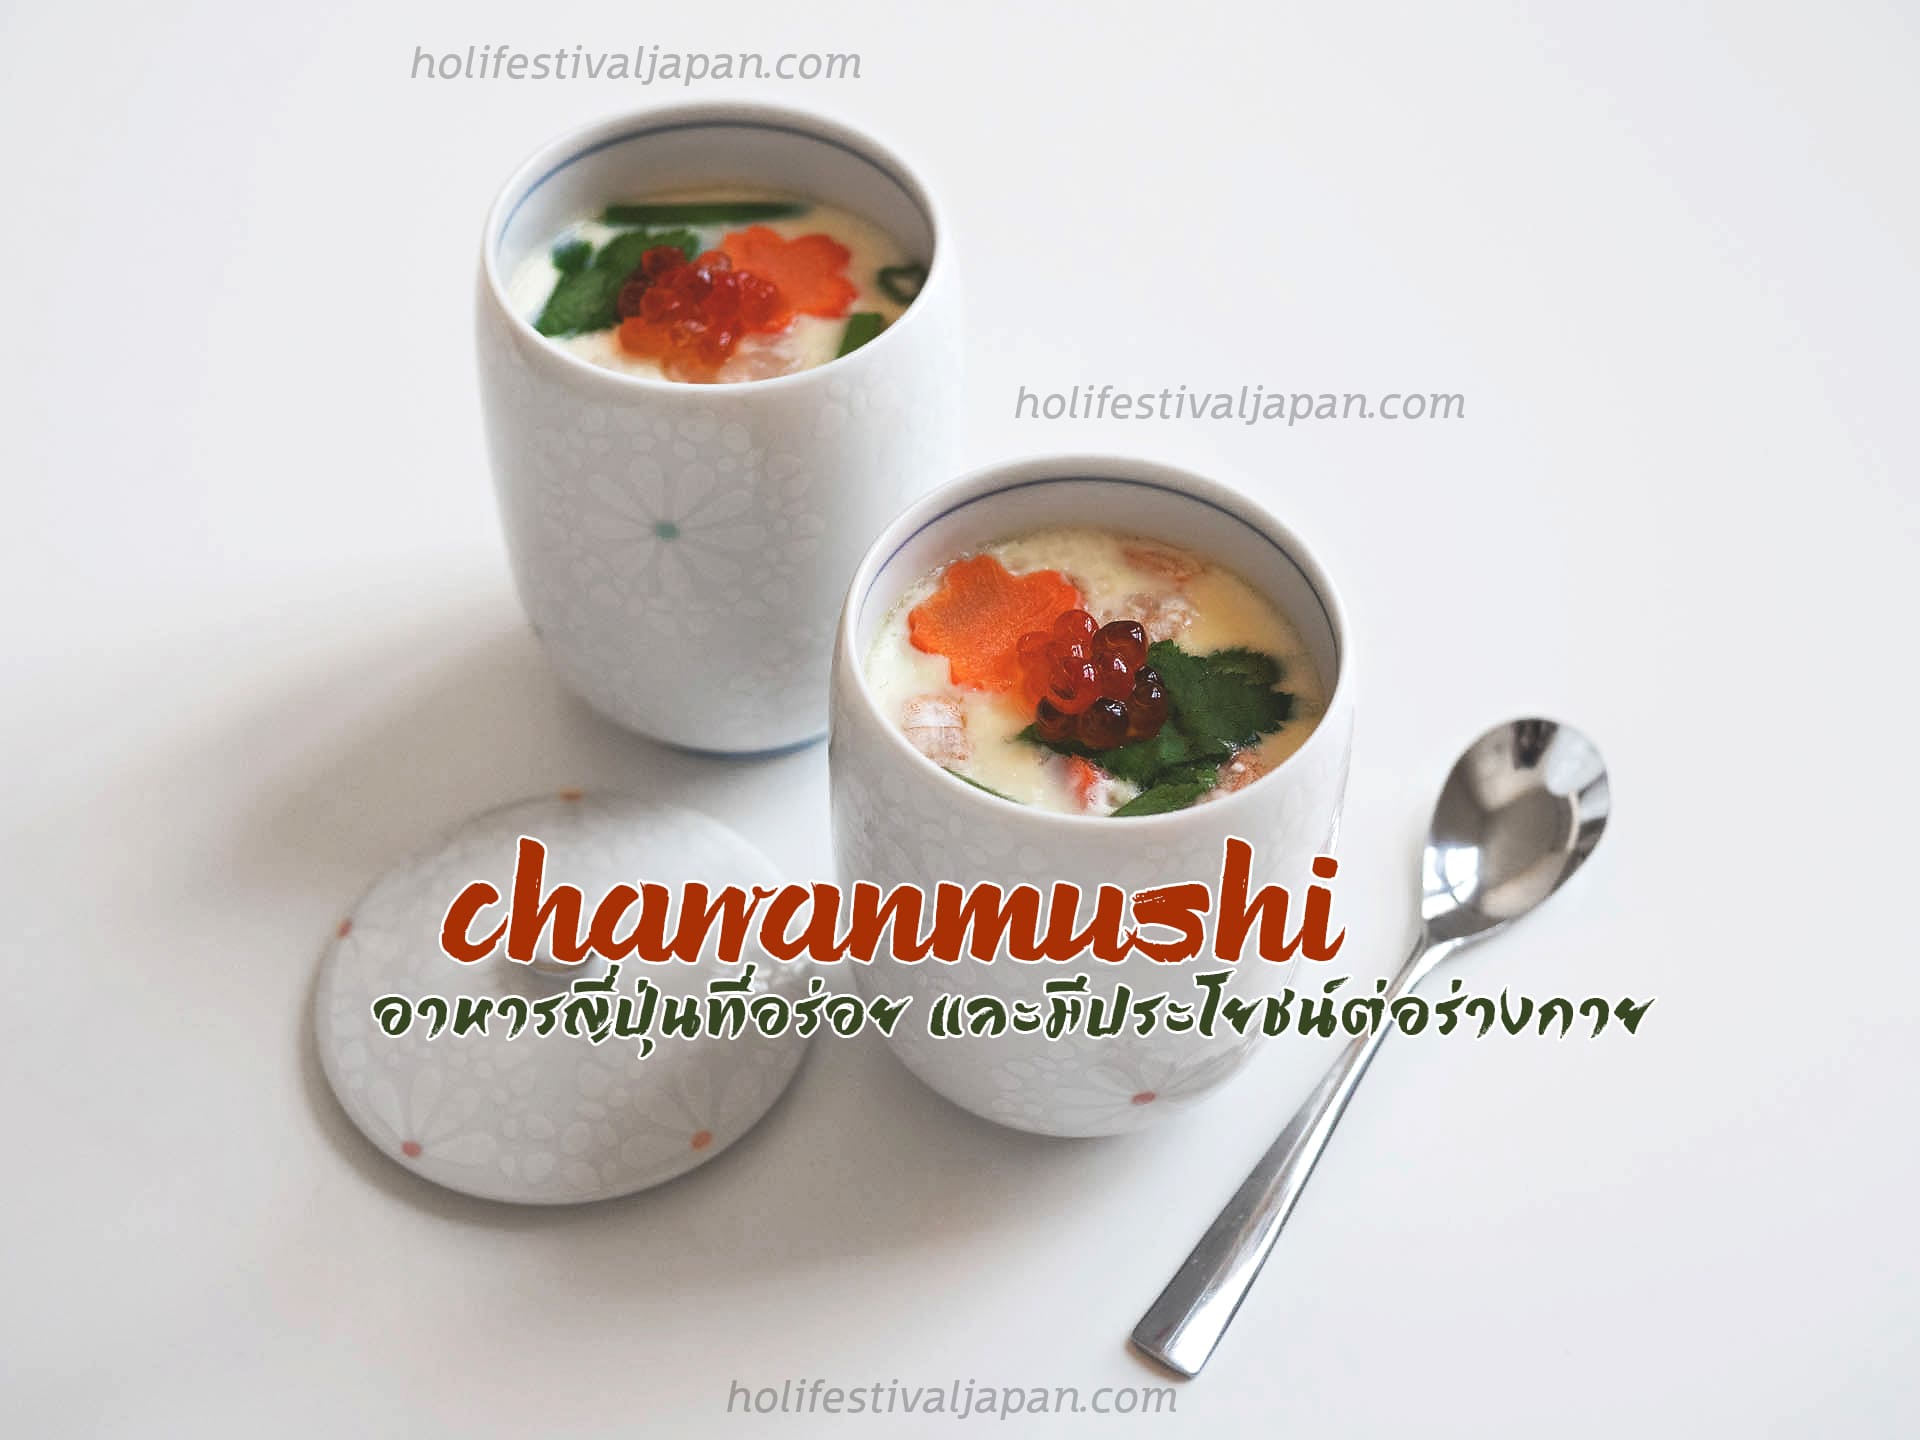 Chawanmushi อาหารญี่ปุ่นที่อร่อย และมีประโยชน์ต่อร่างกาย